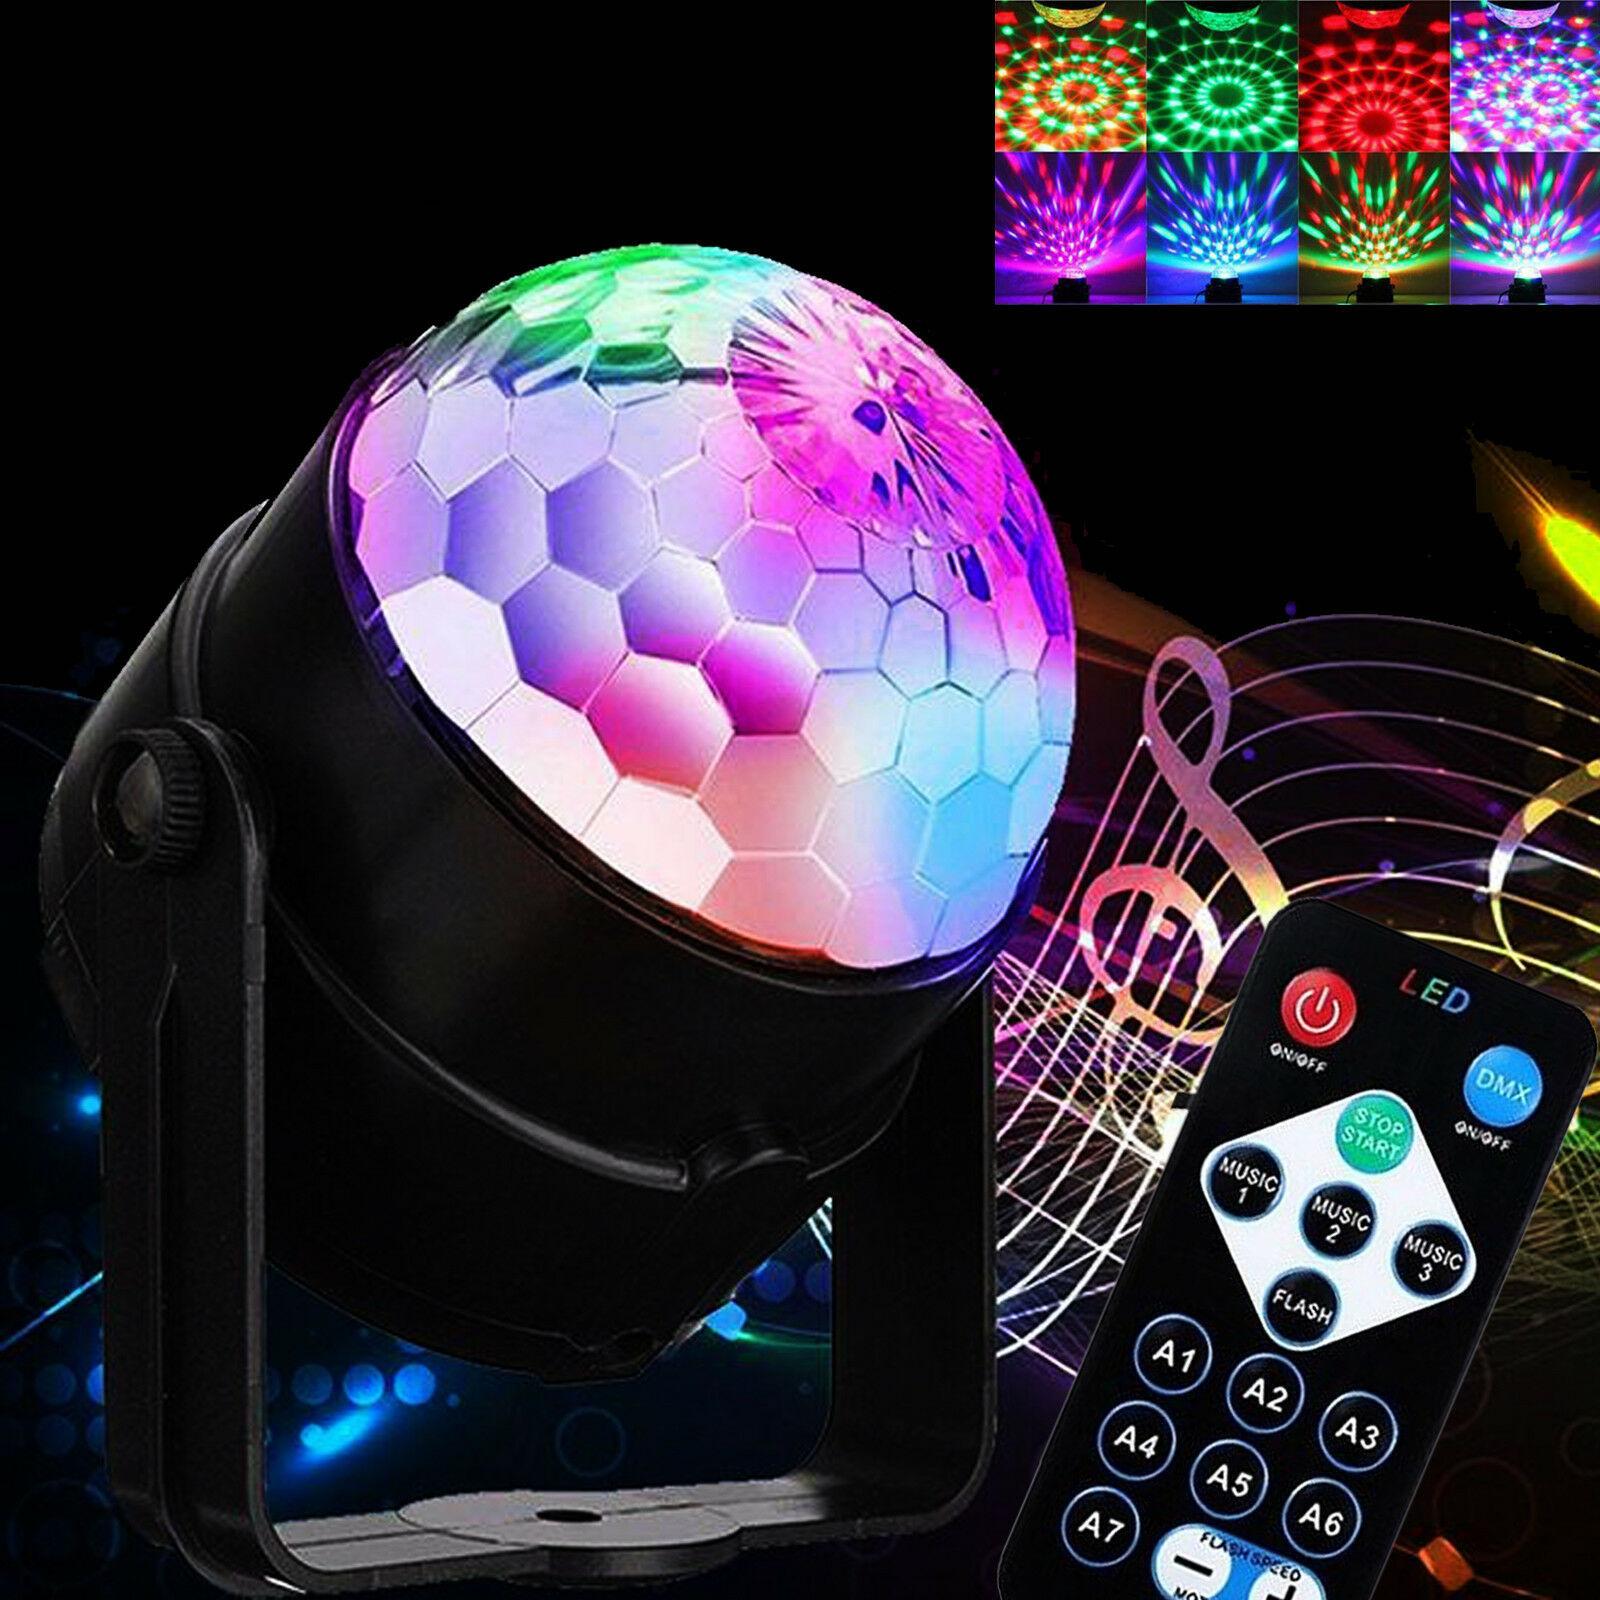 ไฟดิสโก้ รีโมท ไฟดิสโก้เทค ไฟปาร์ตี้ ไฟคาราโอเกะ ไฟเวที ไฟดิสโก้เธค Disco light Led party light Magic Ball Lighting Remote